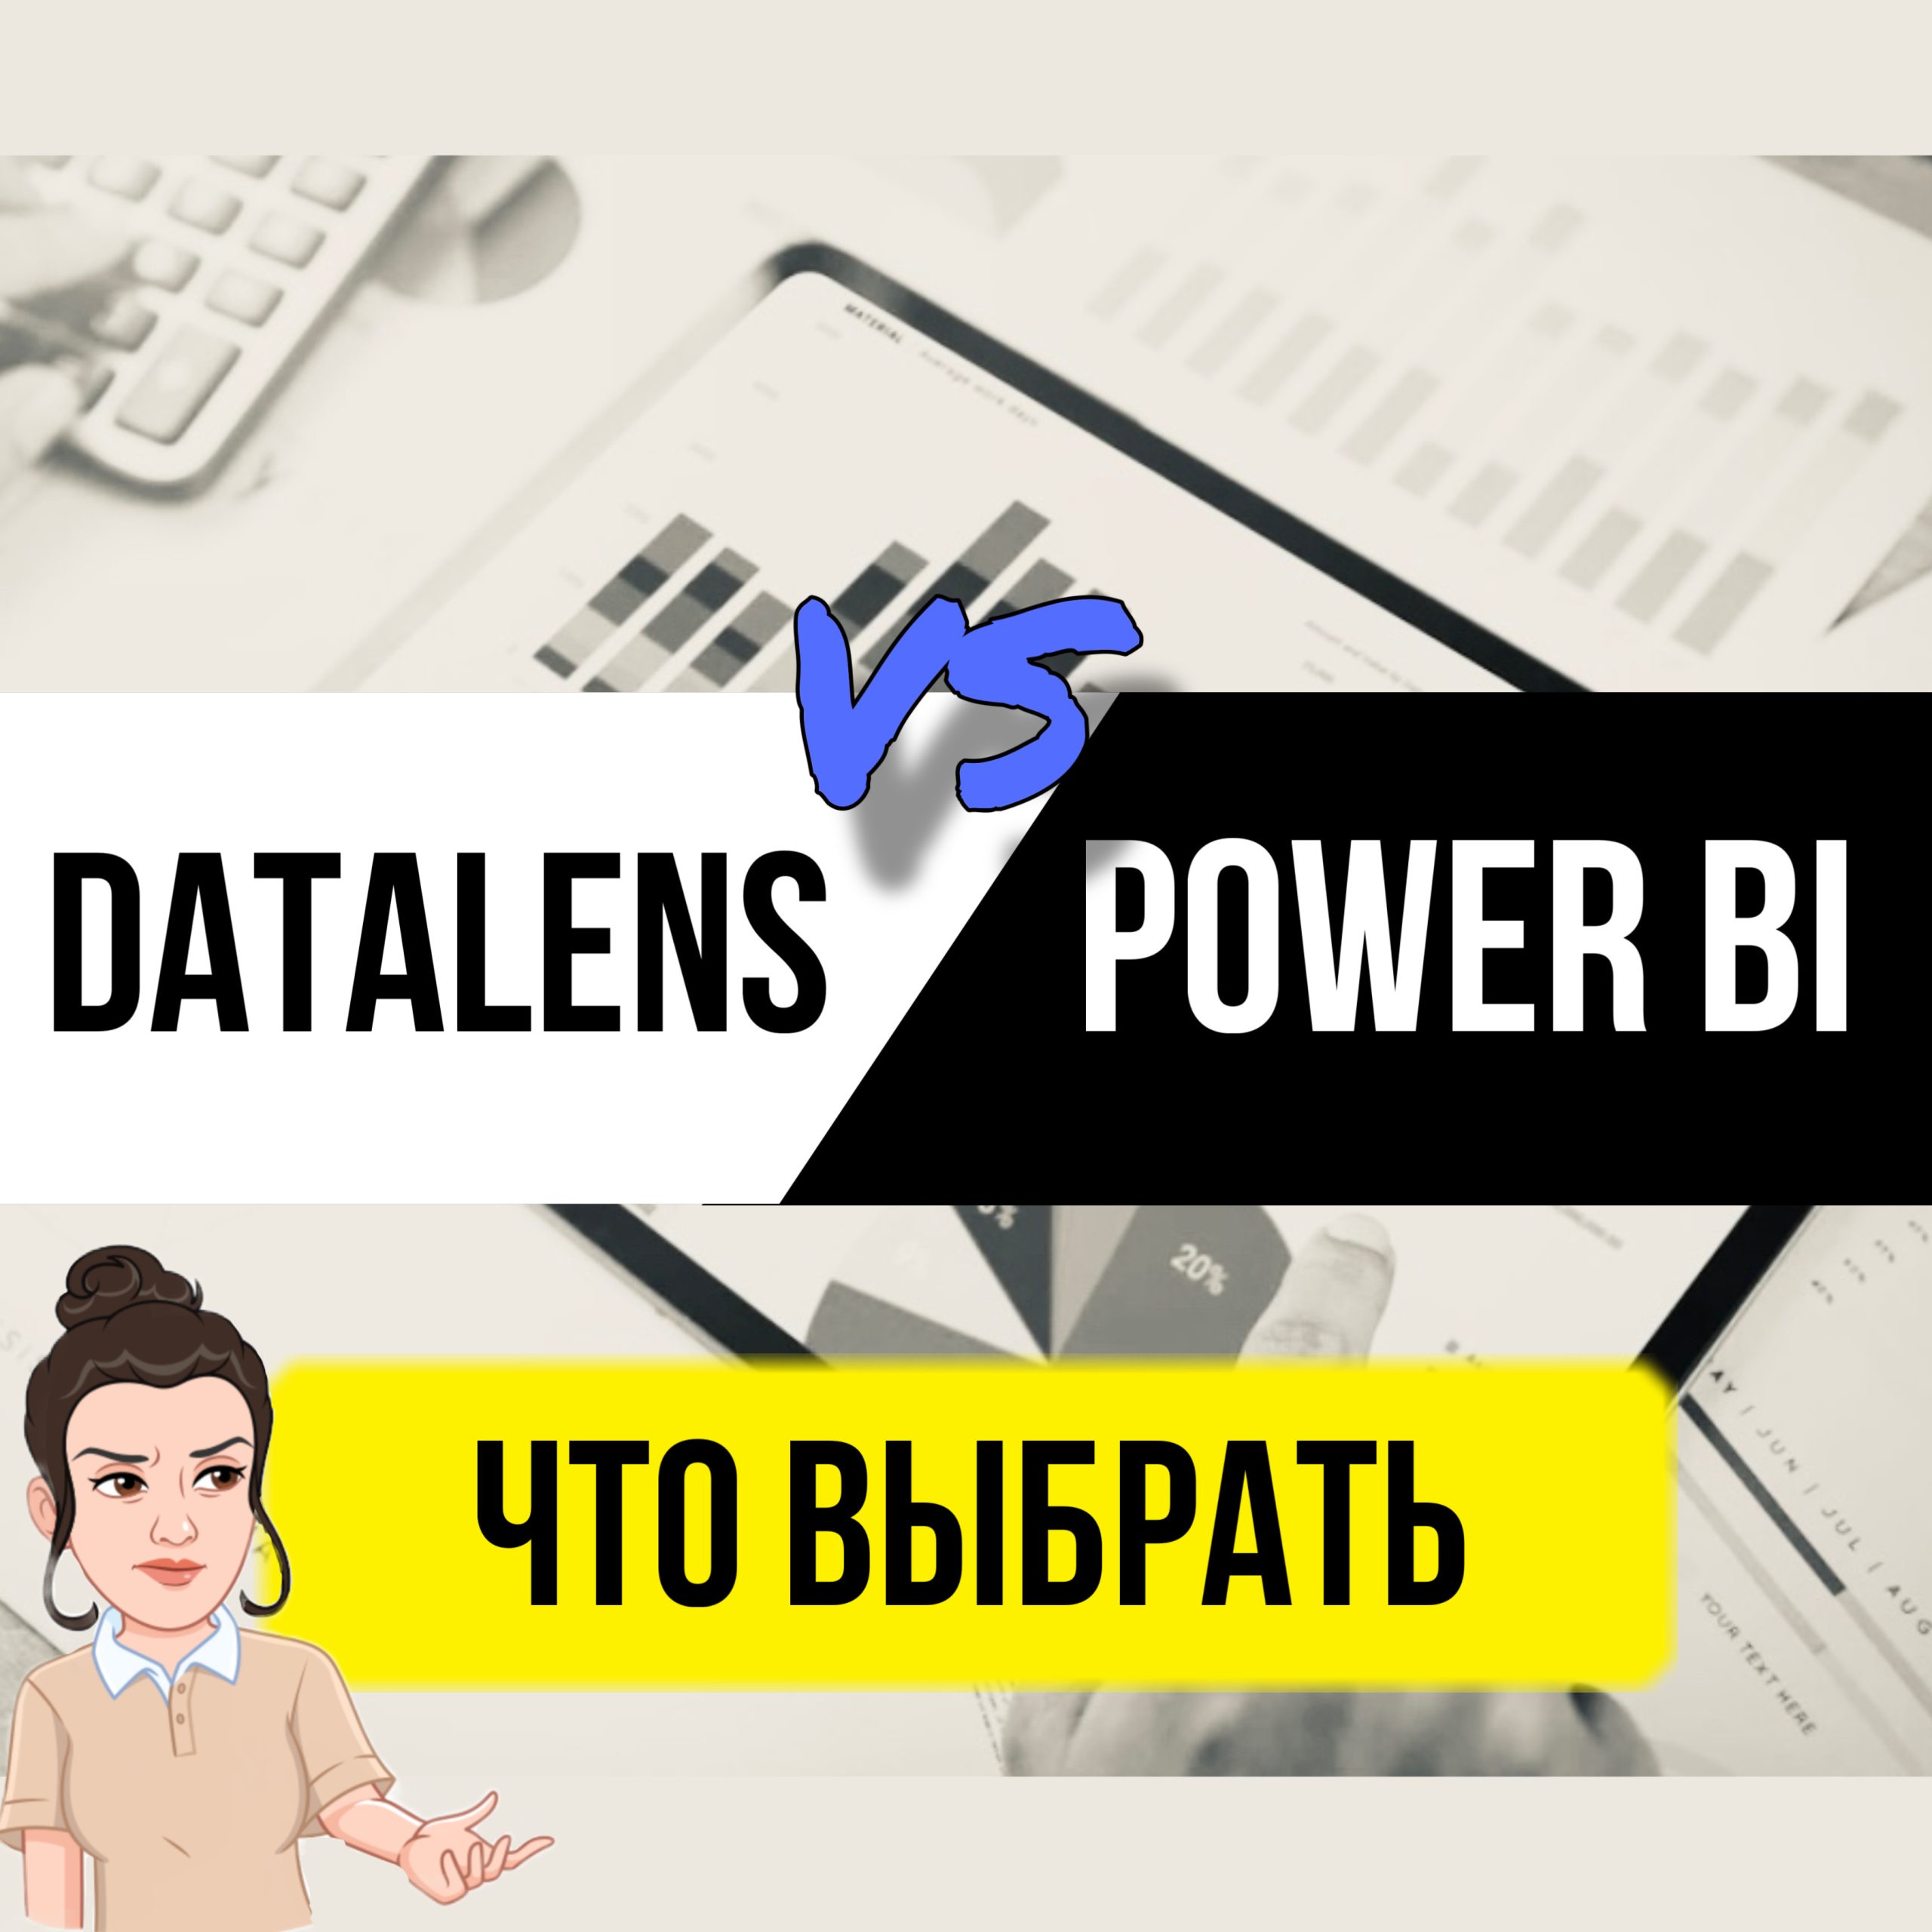 В этой статье вкратце посмотрим, что такое DataLens и может ли он стать аналогом известной аналитической системы Power BI.